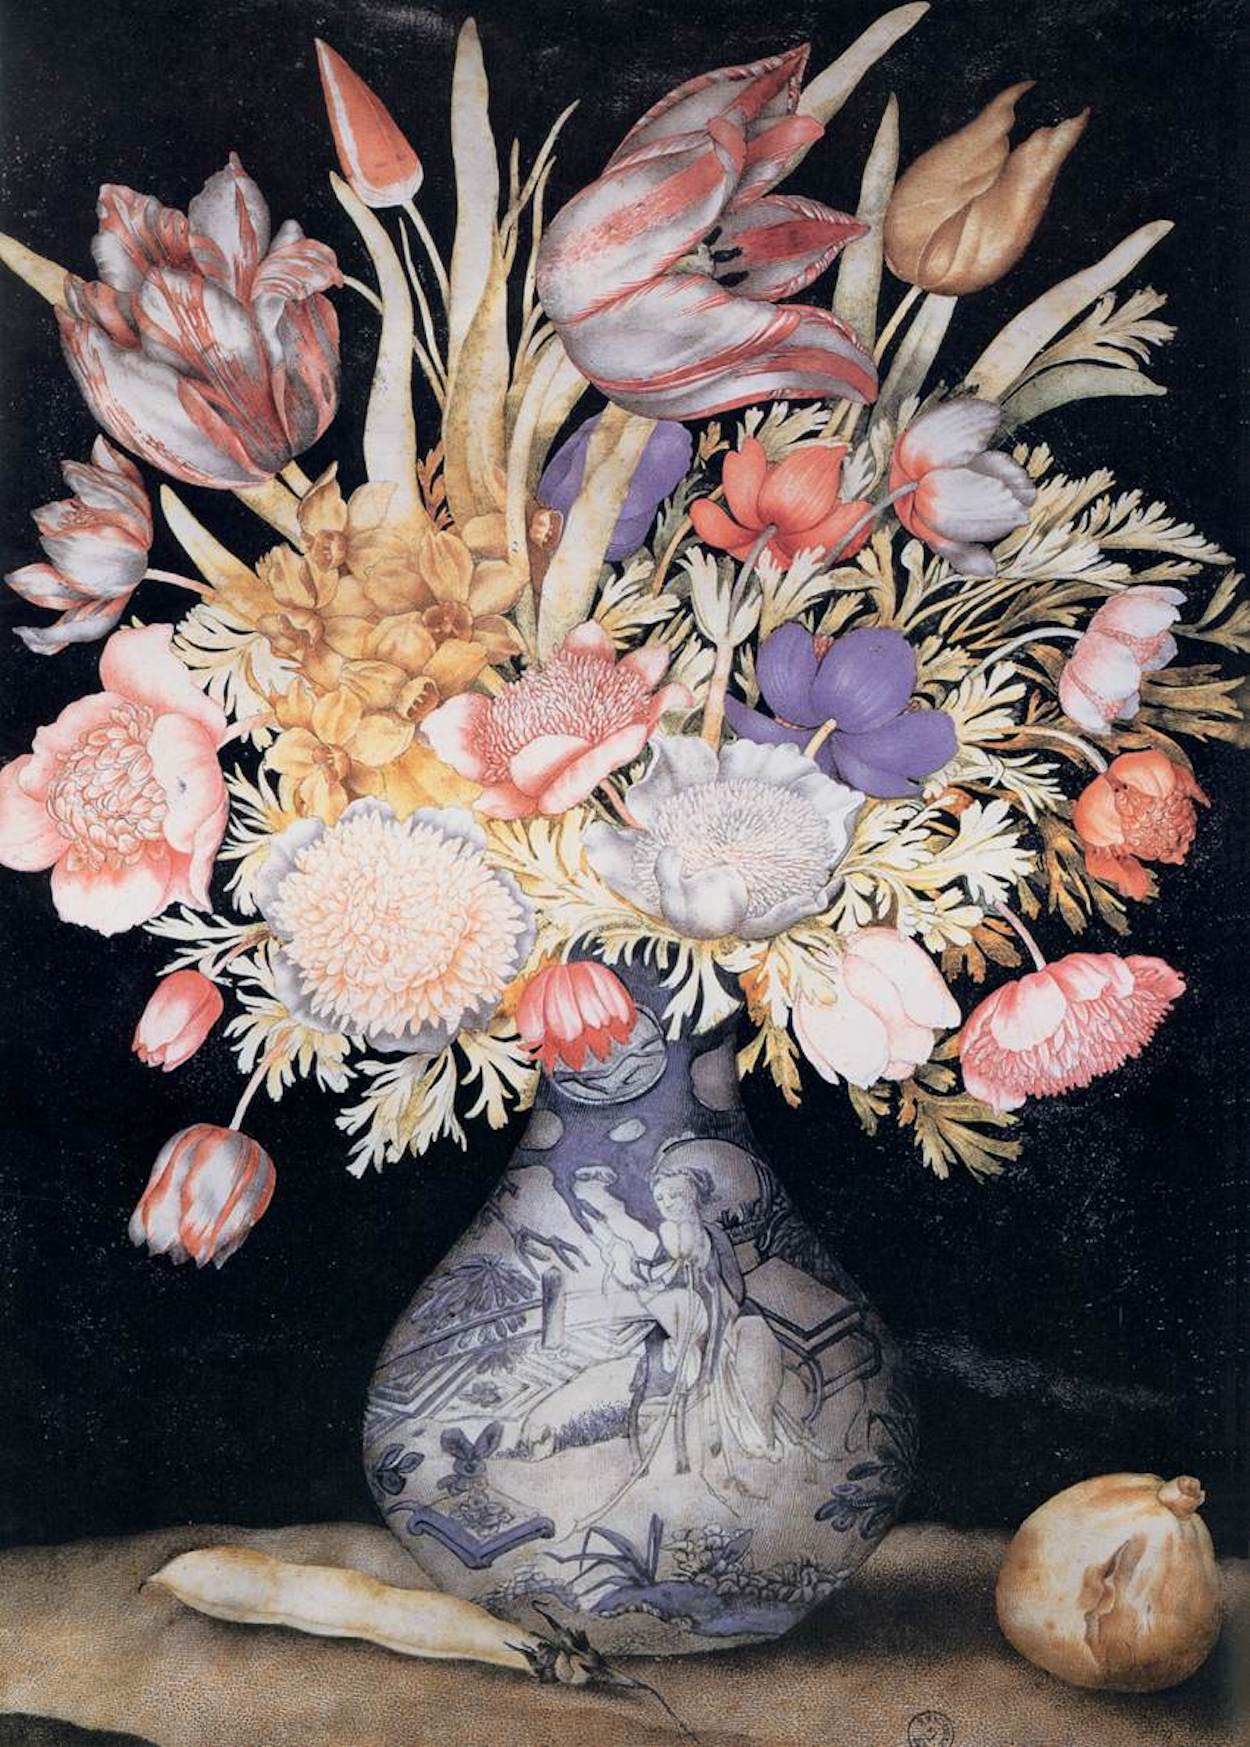 Jarrón de porcelana china con flores y frutas by Giovanna Garzoni - c. 1641-1652 - 51 x 36,9 cm Galleria degli Uffizi